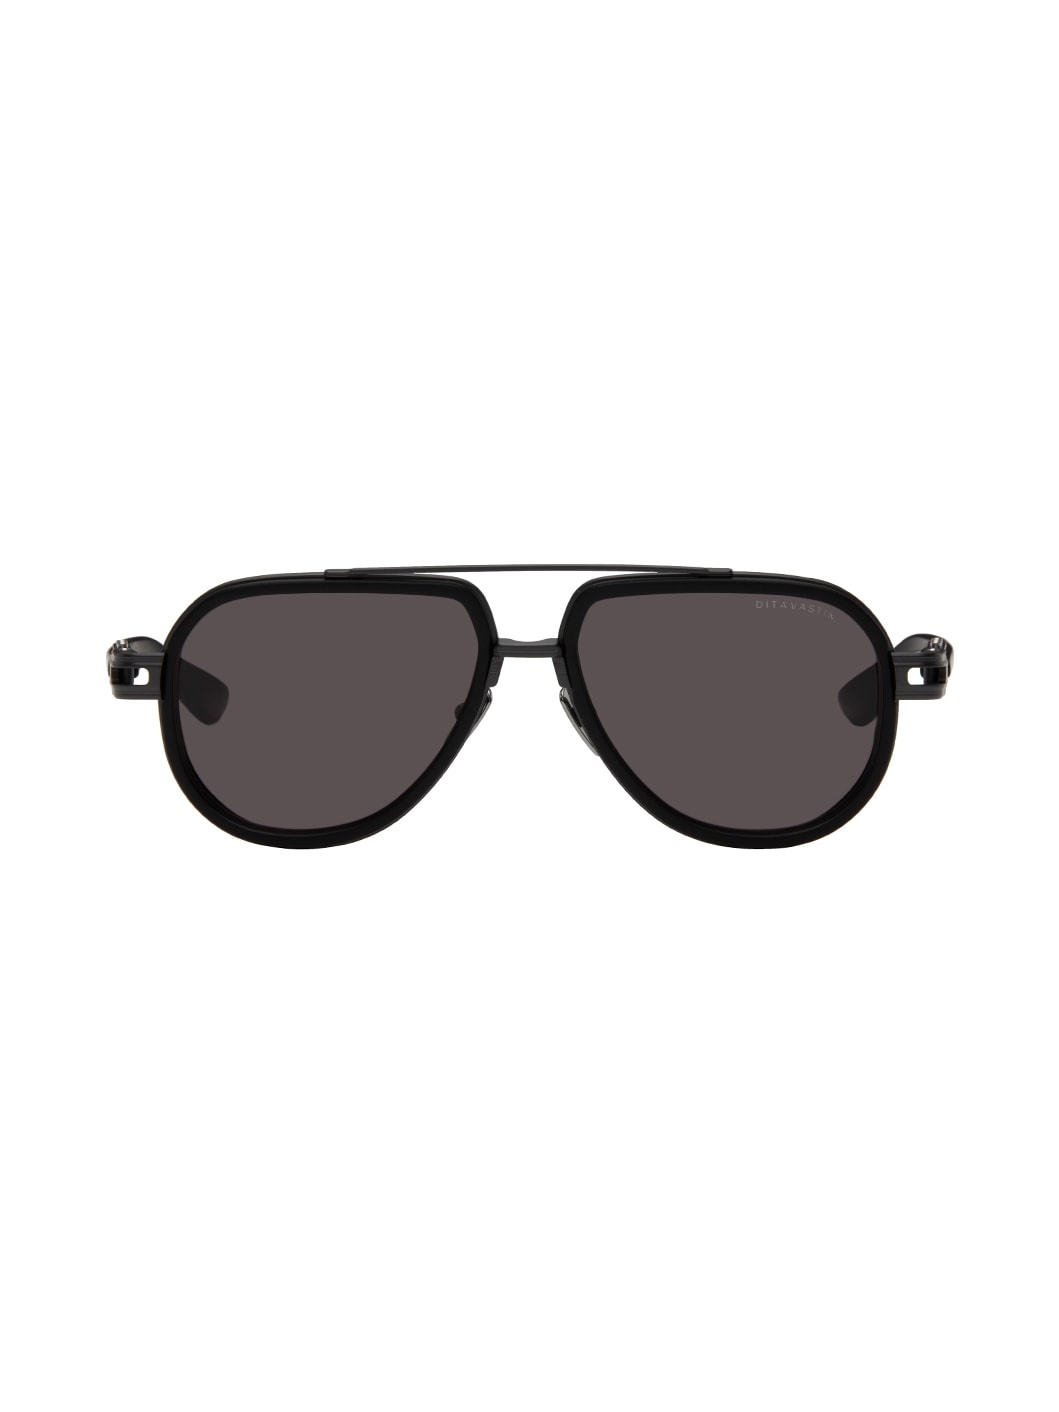 Black Vastik Sunglasses - 1